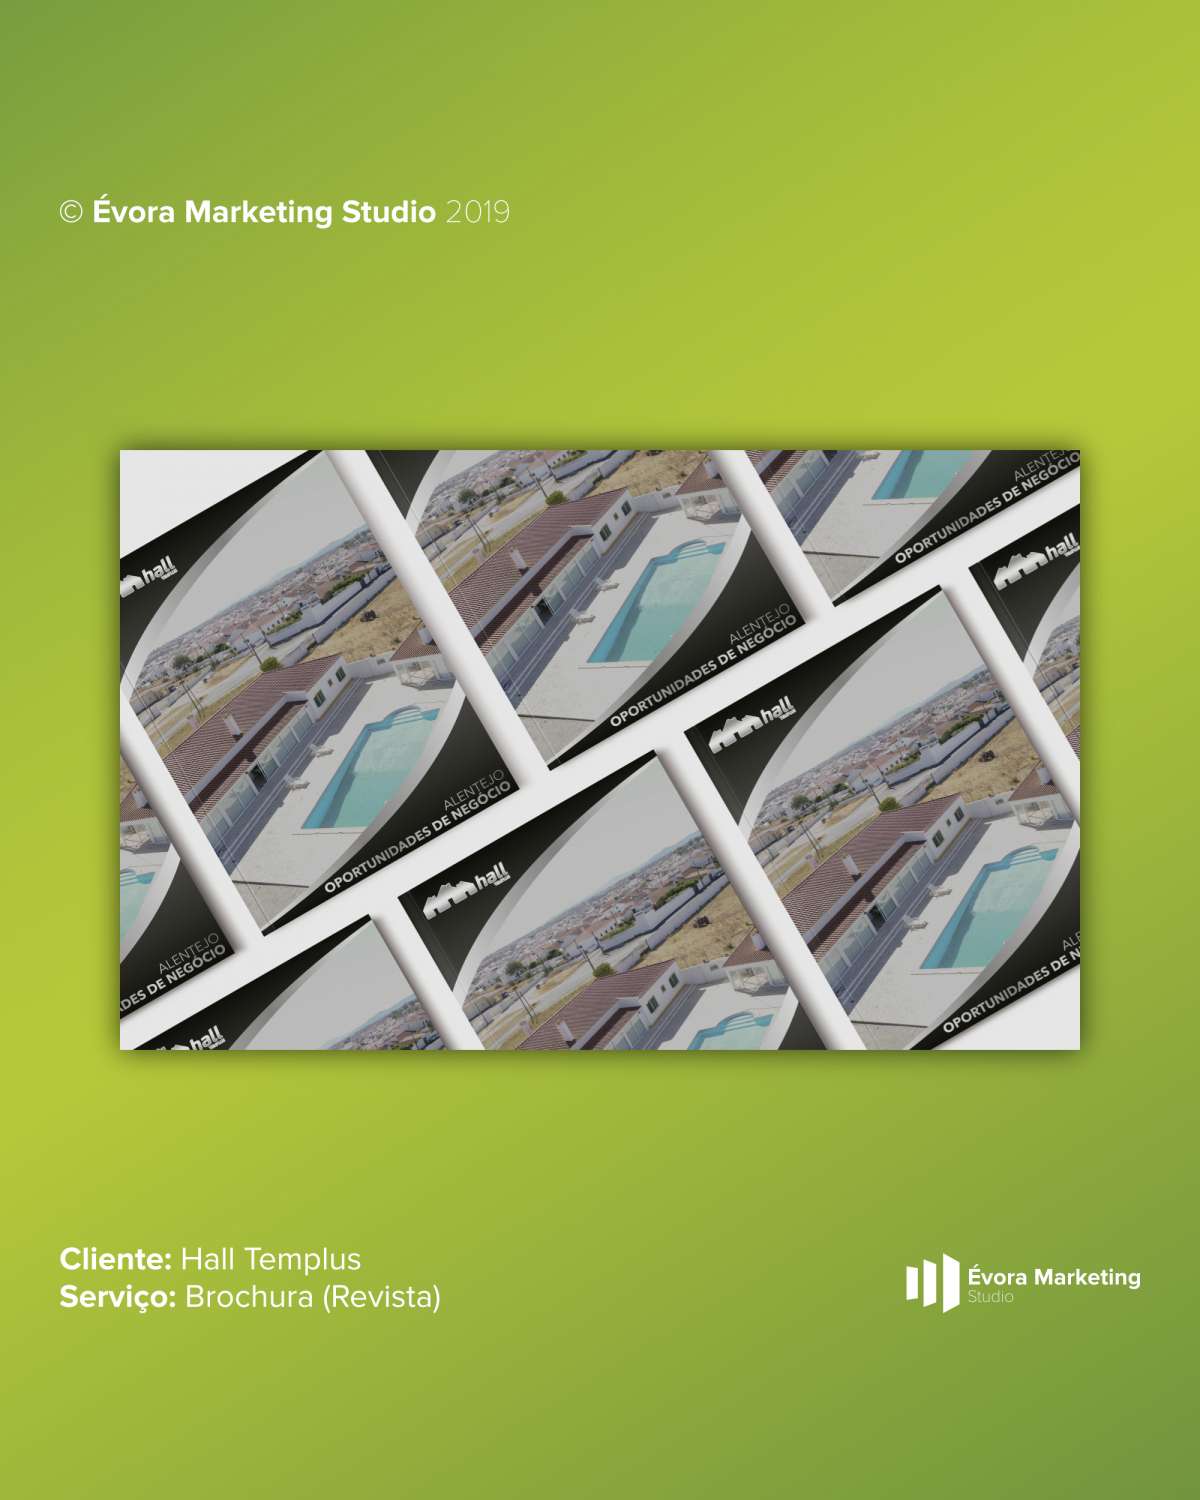 Évora Marketing Studio - Évora - Web Design e Web Development